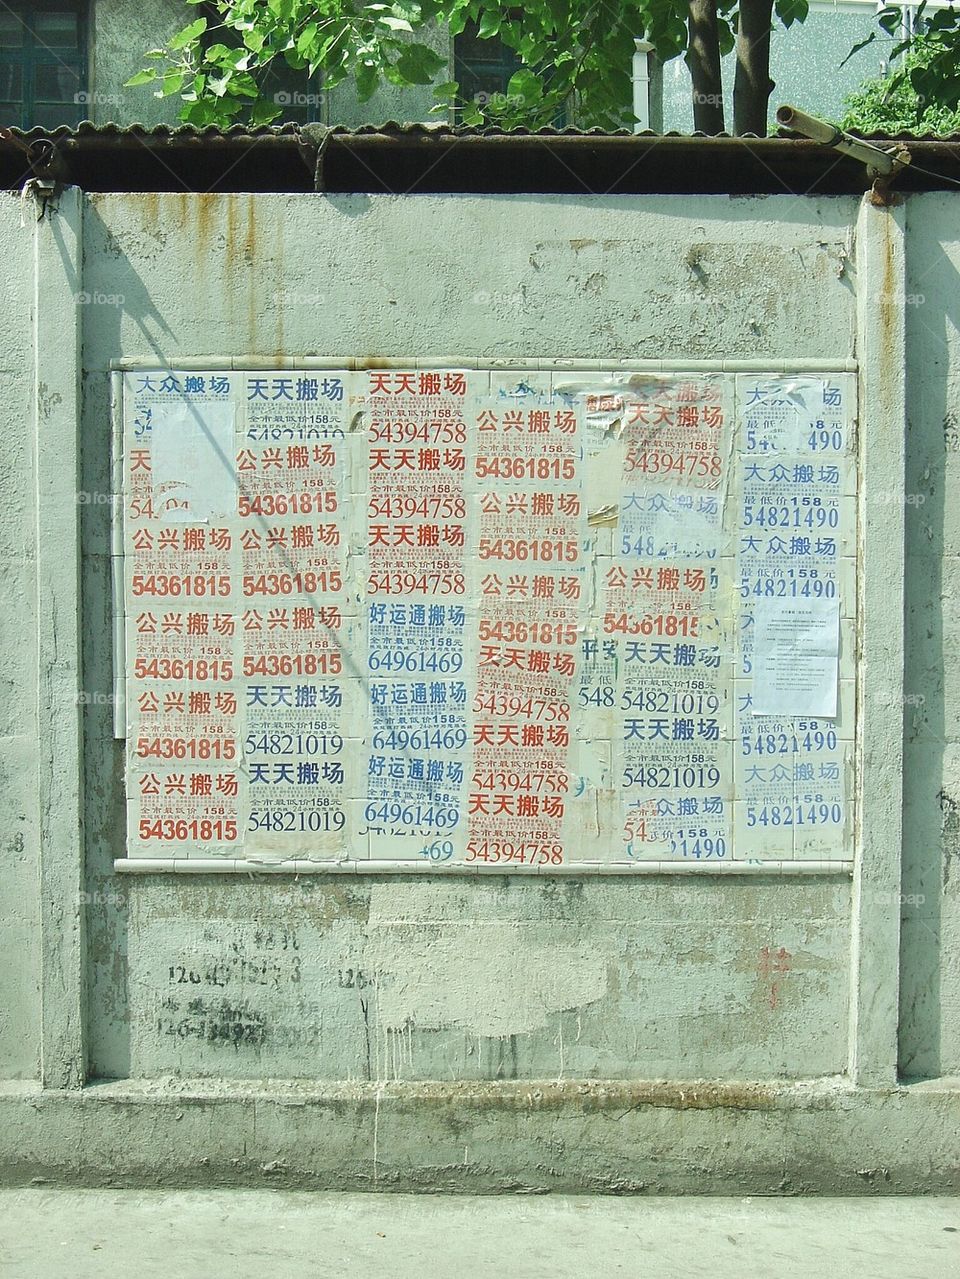 Wall of Ads, China